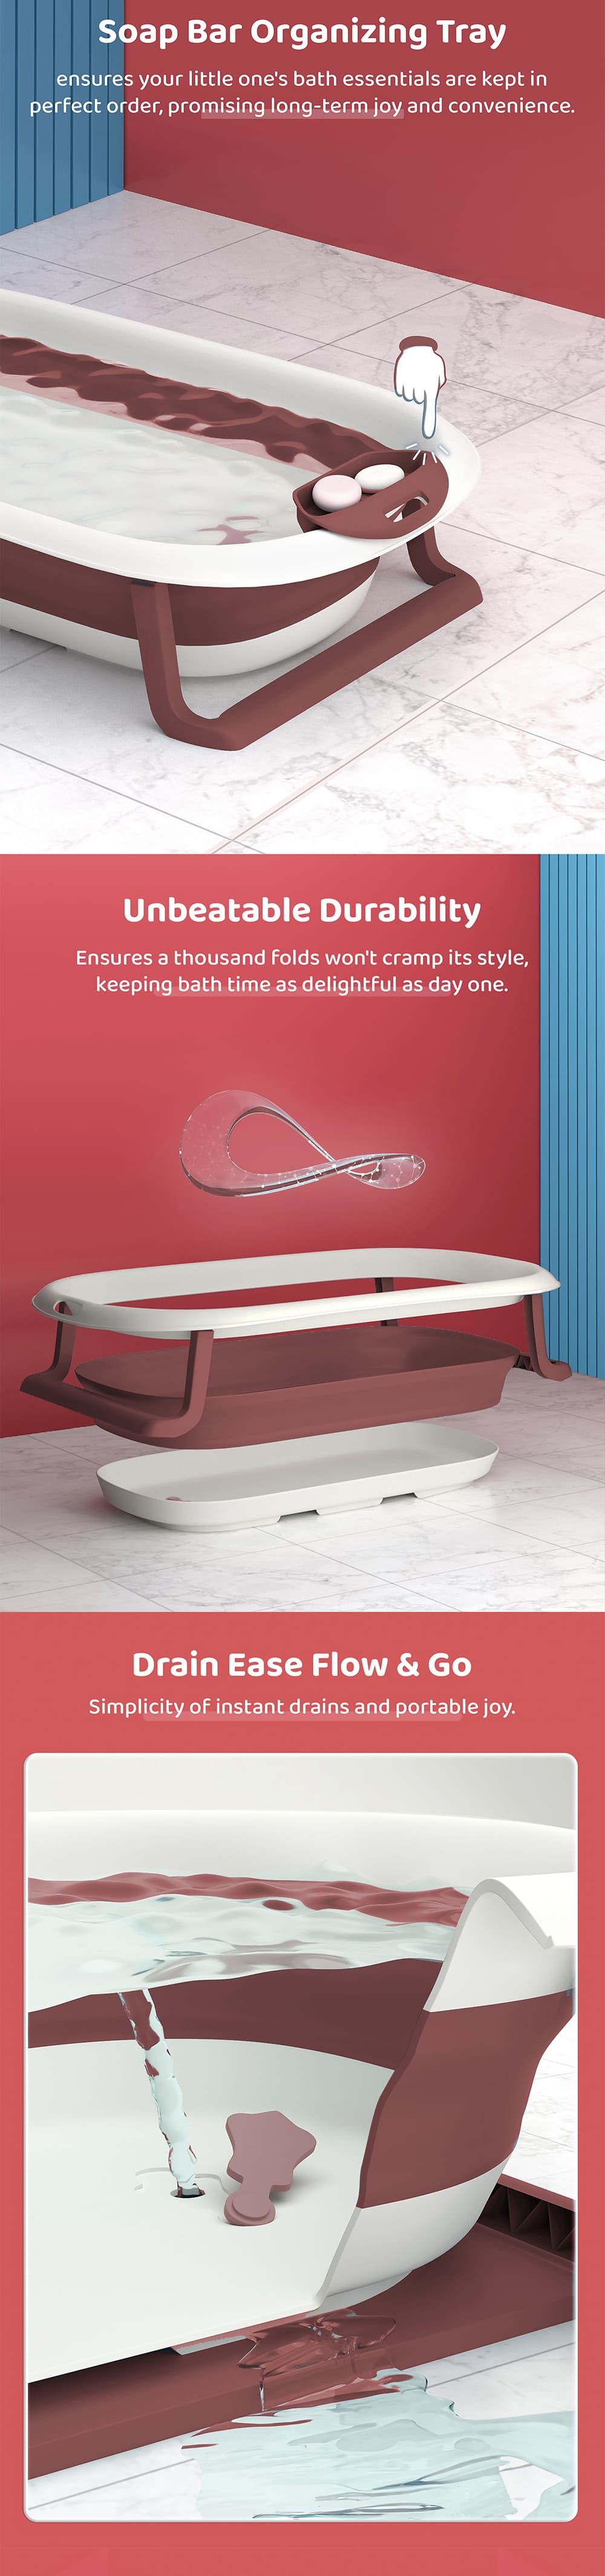 Anti-slip Baby Bath Tub with Cushion